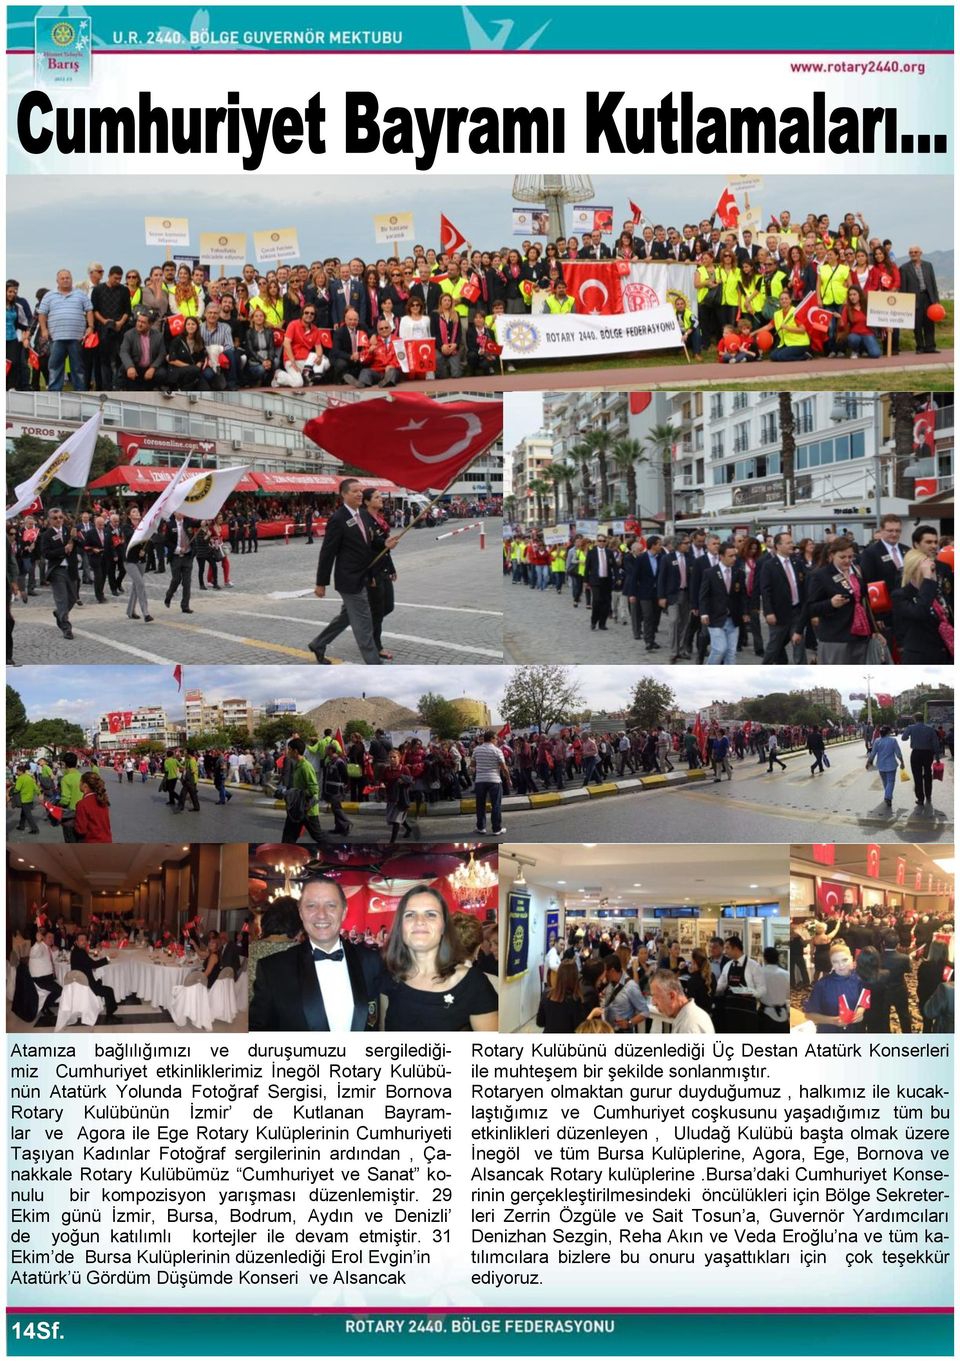 29 Ekim günü Ġzmir, Bursa, Bodrum, Aydın ve Denizli de yoğun katılımlı kortejler ile devam etmiģtir.